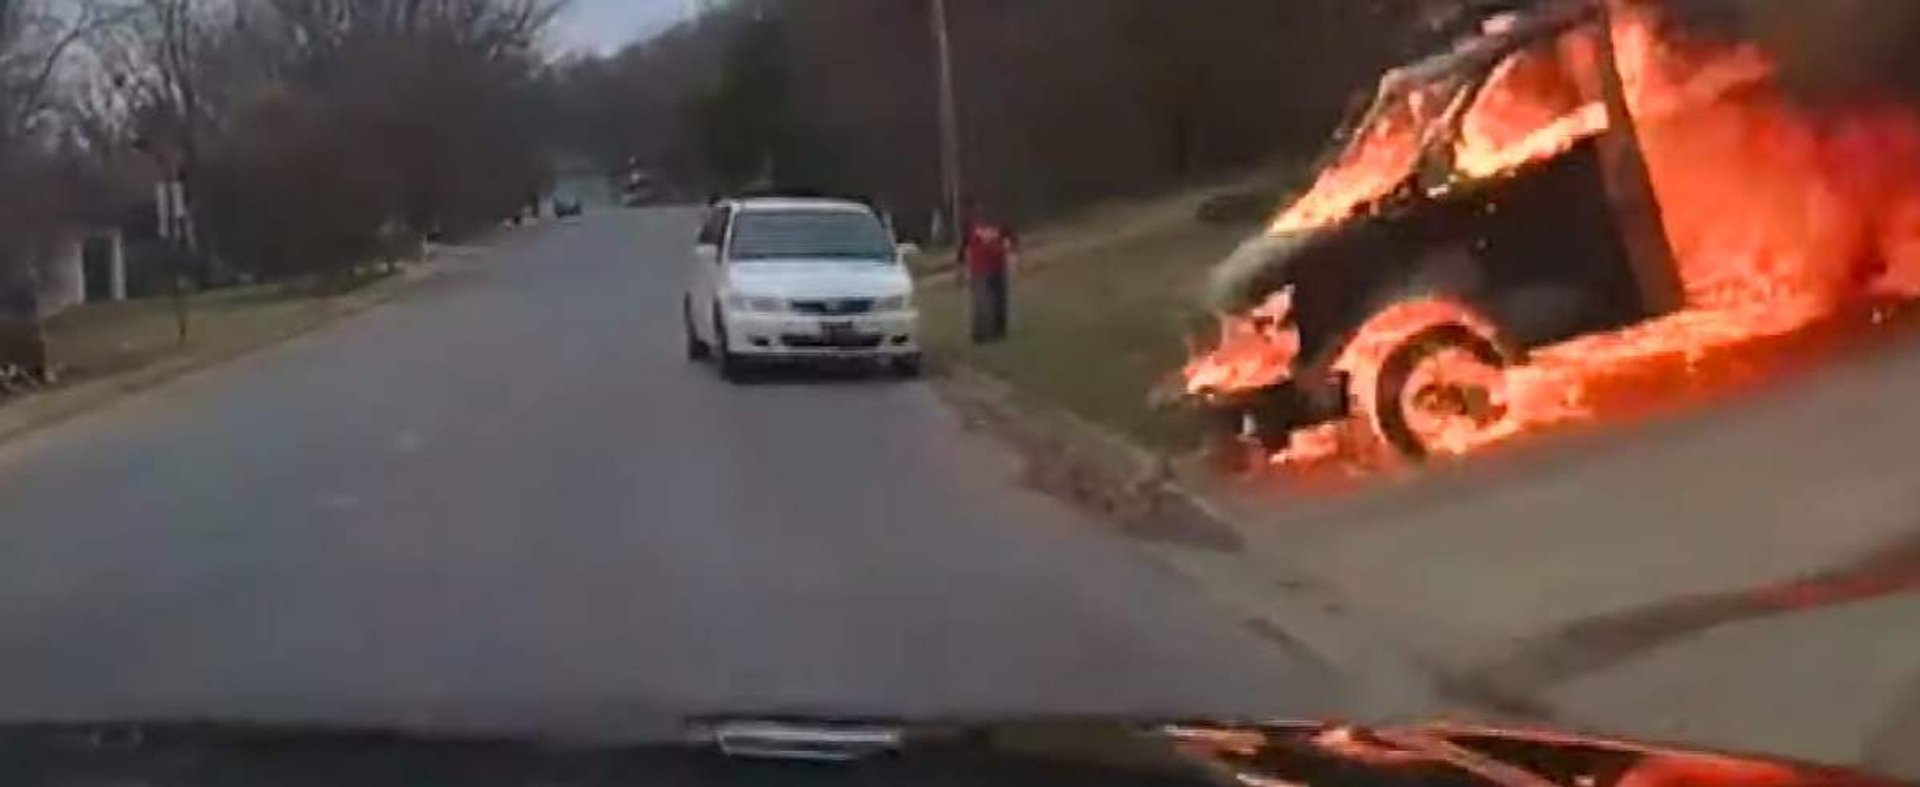 Płonący van staczał się w dół drogi